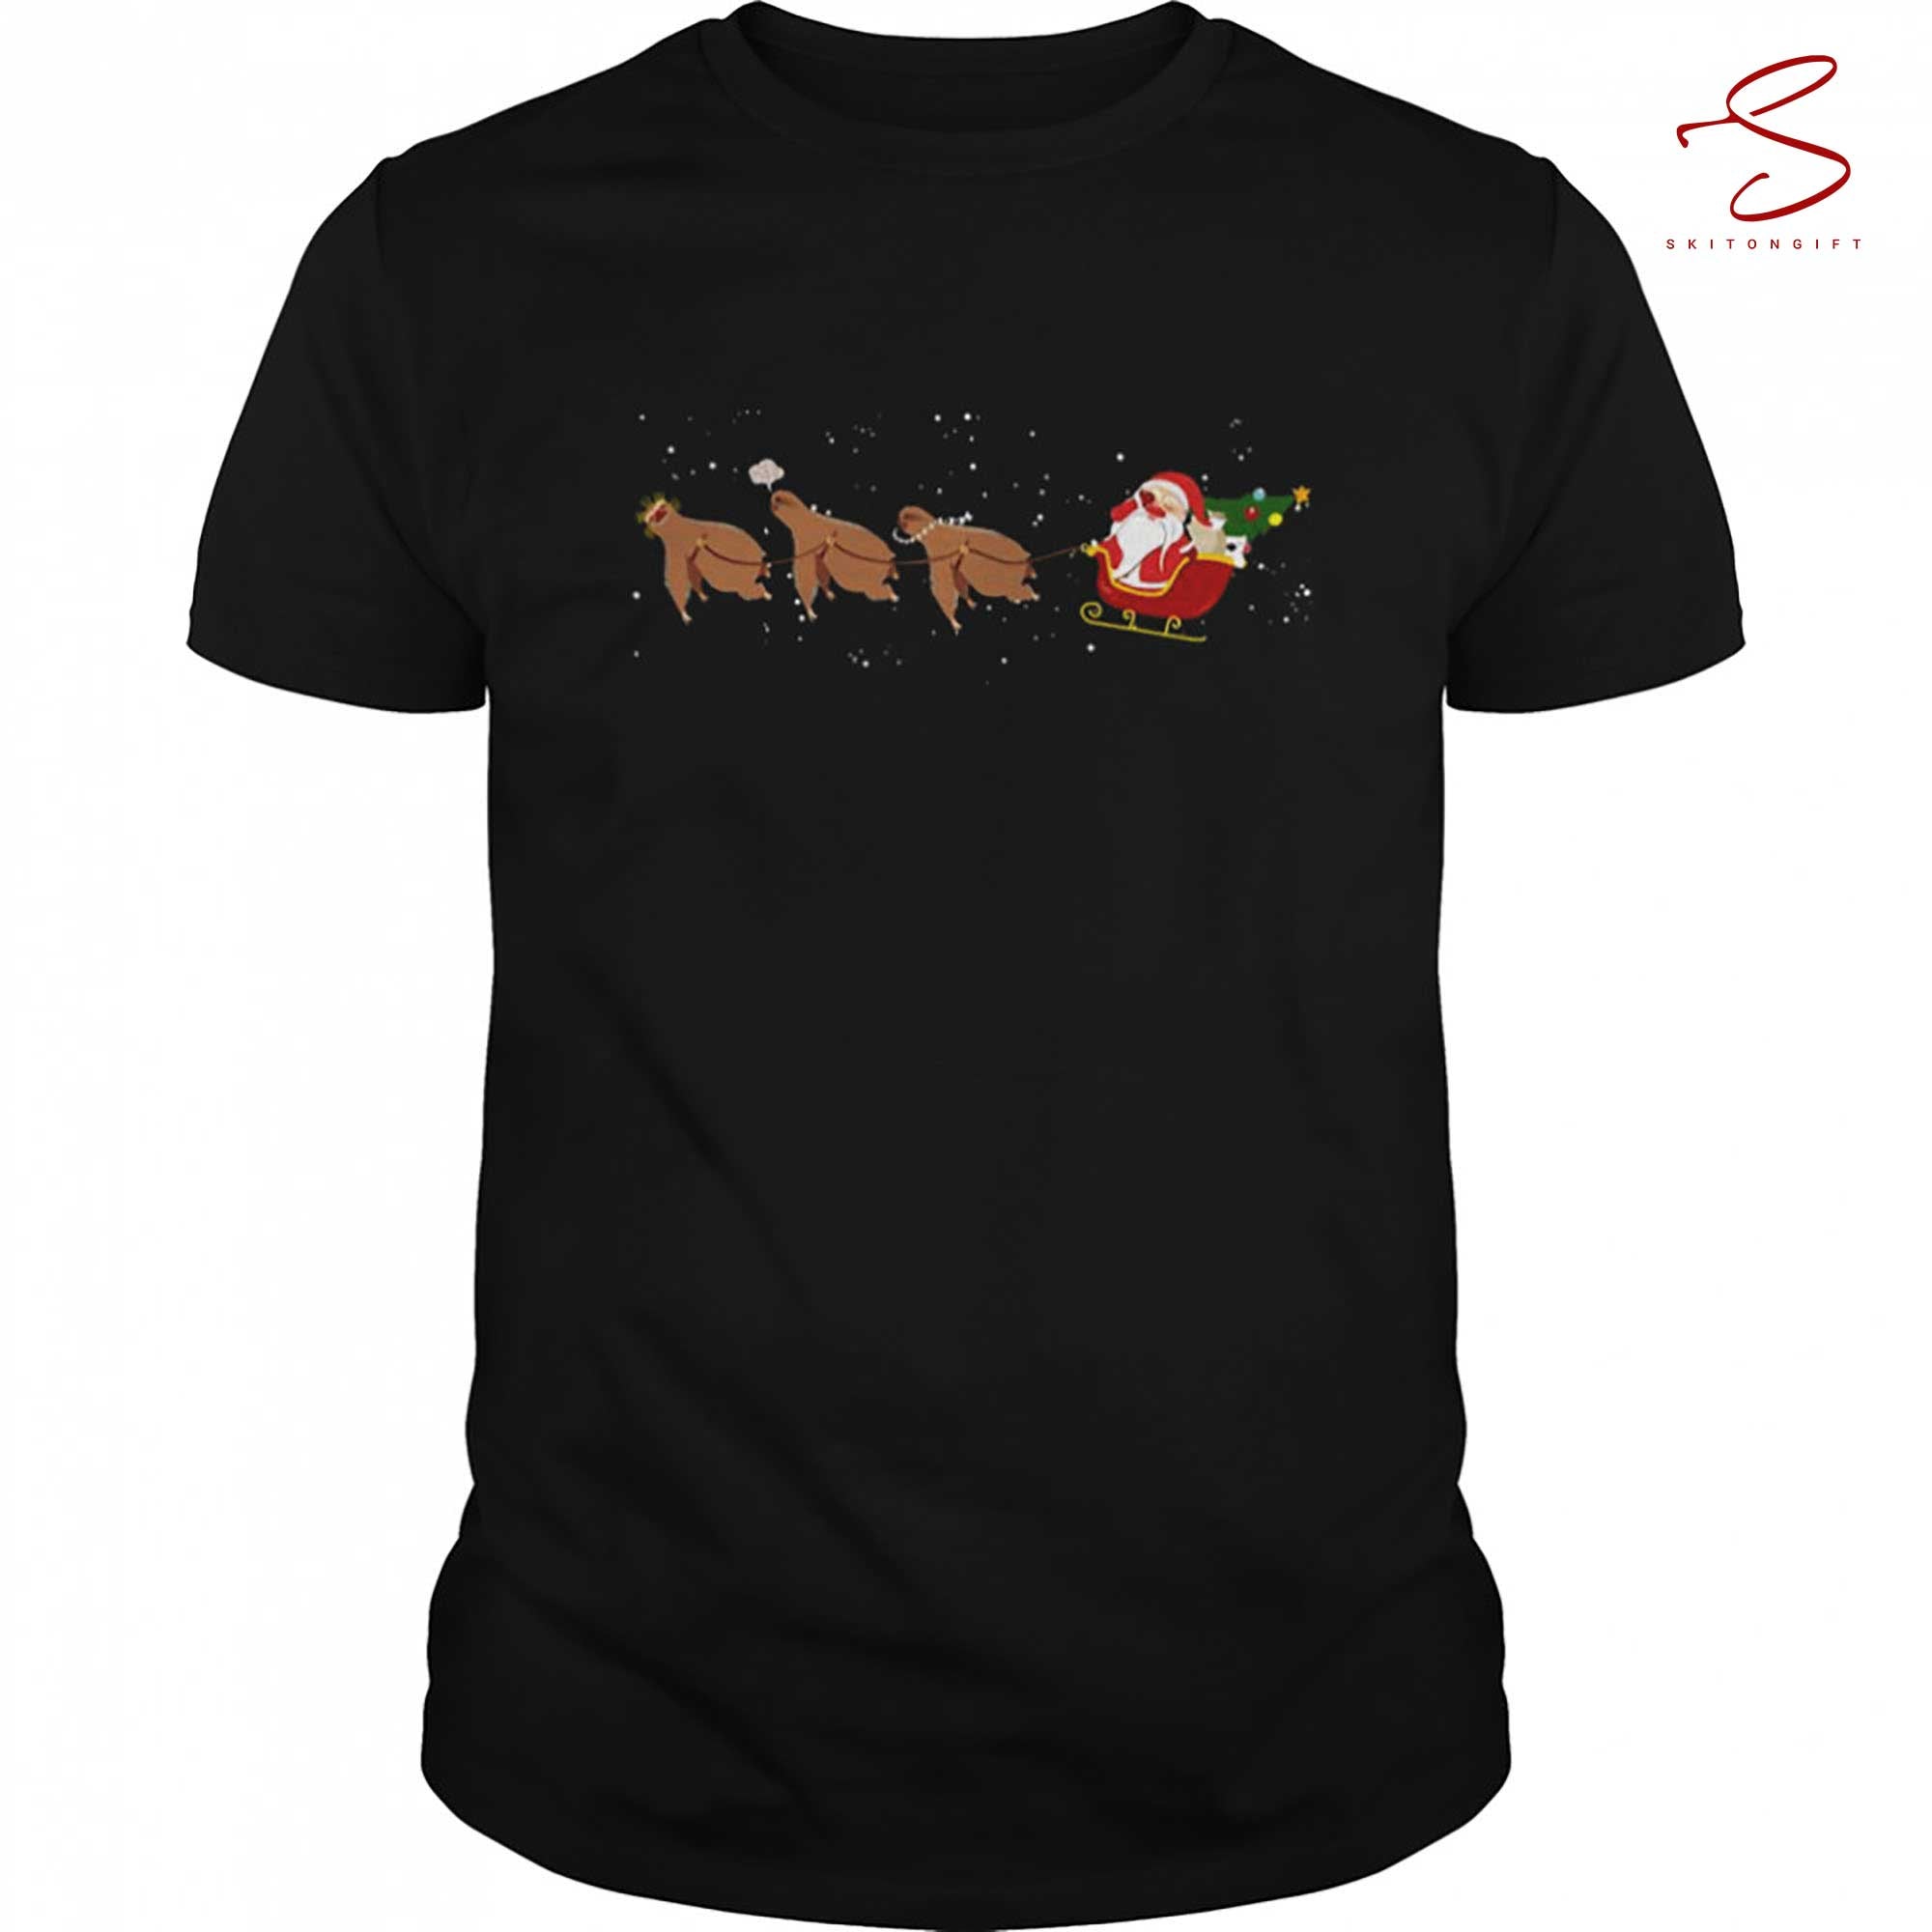 Skitongift Sloth Santa Face Palm Christmas Shirt